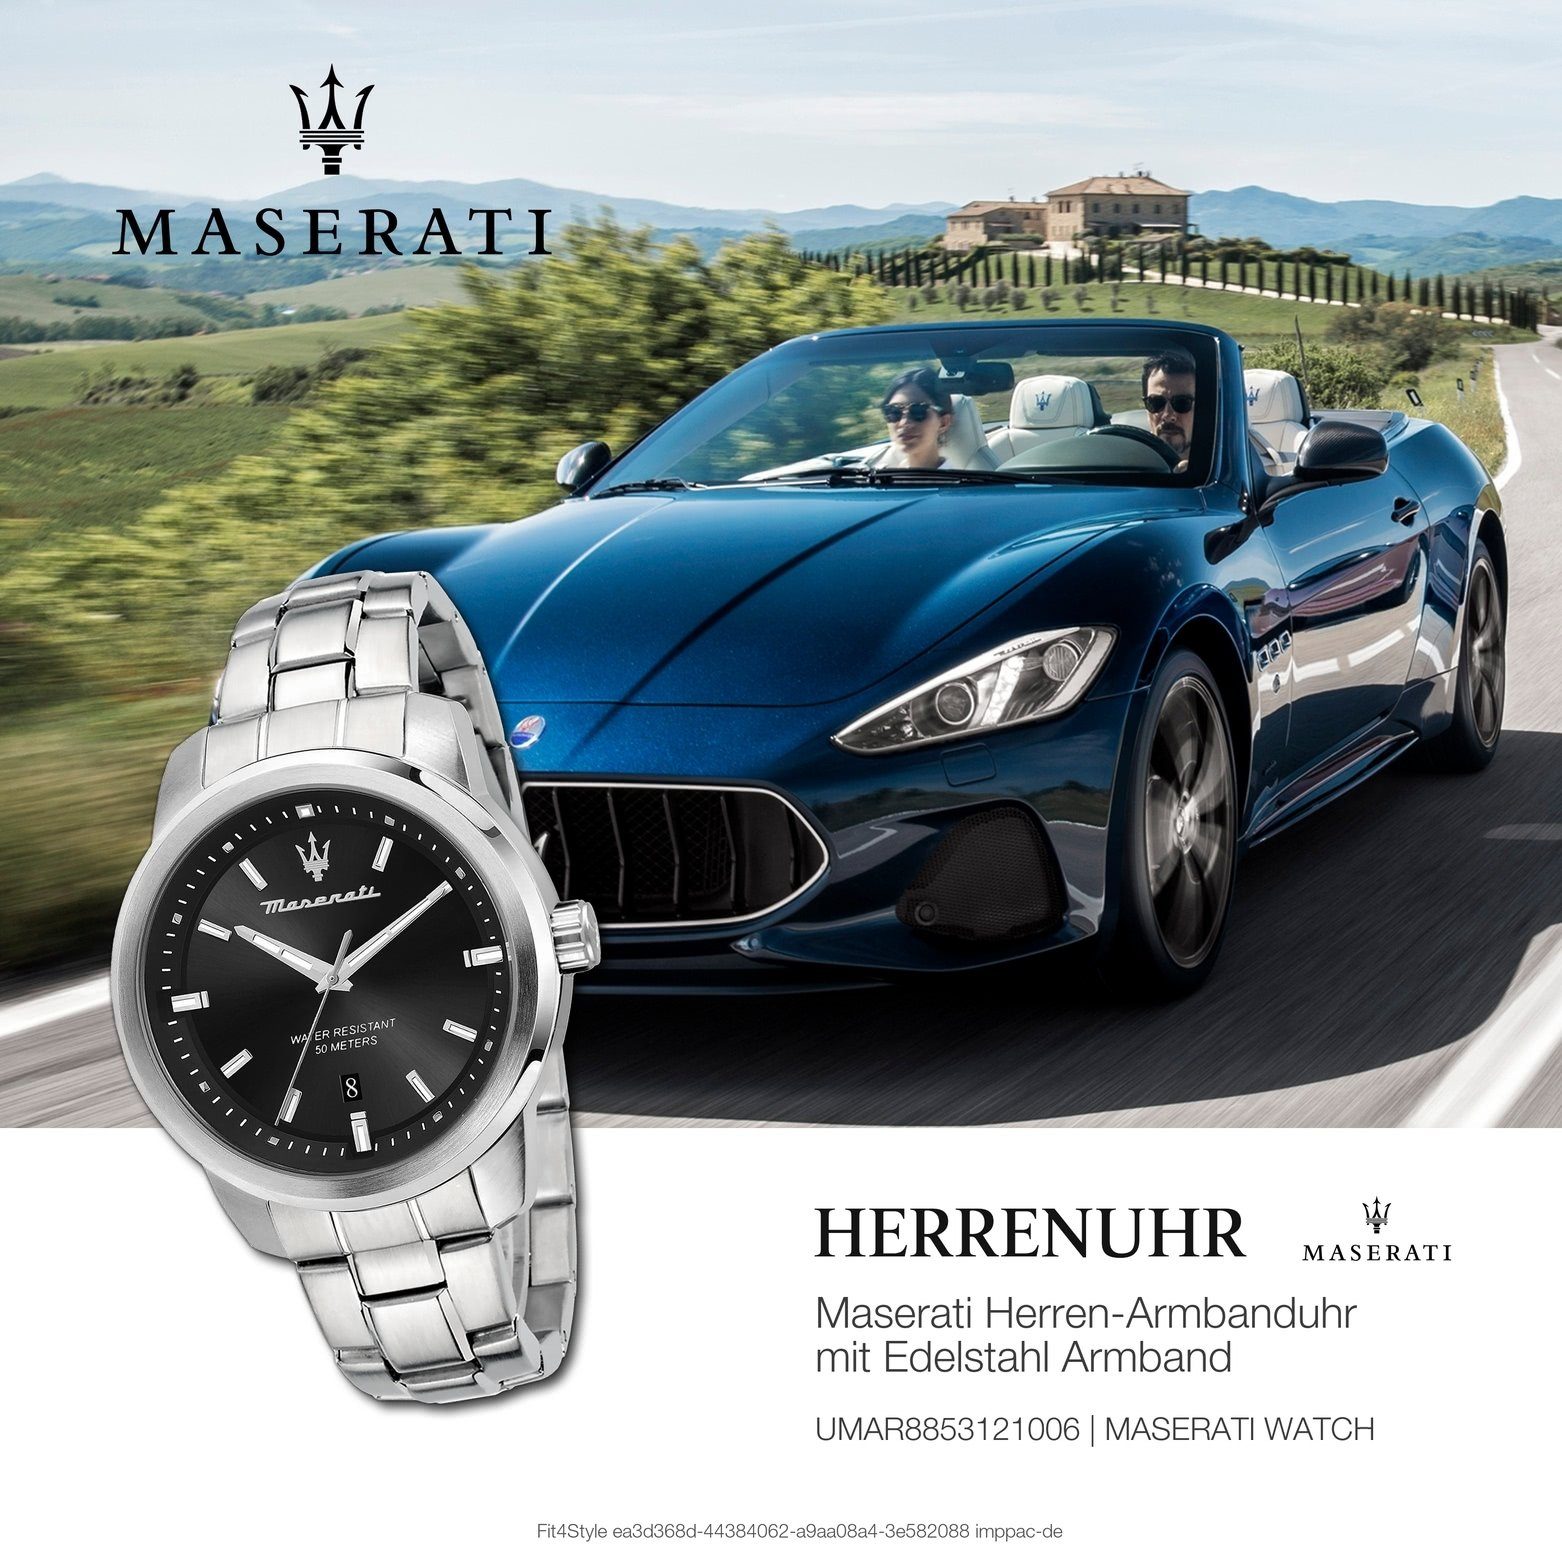 MASERATI Quarzuhr Made-In 44mm) Maserati SUCCESSO, Italy groß Herrenuhr Edelstahlarmband, Herrenuhr (ca. rund